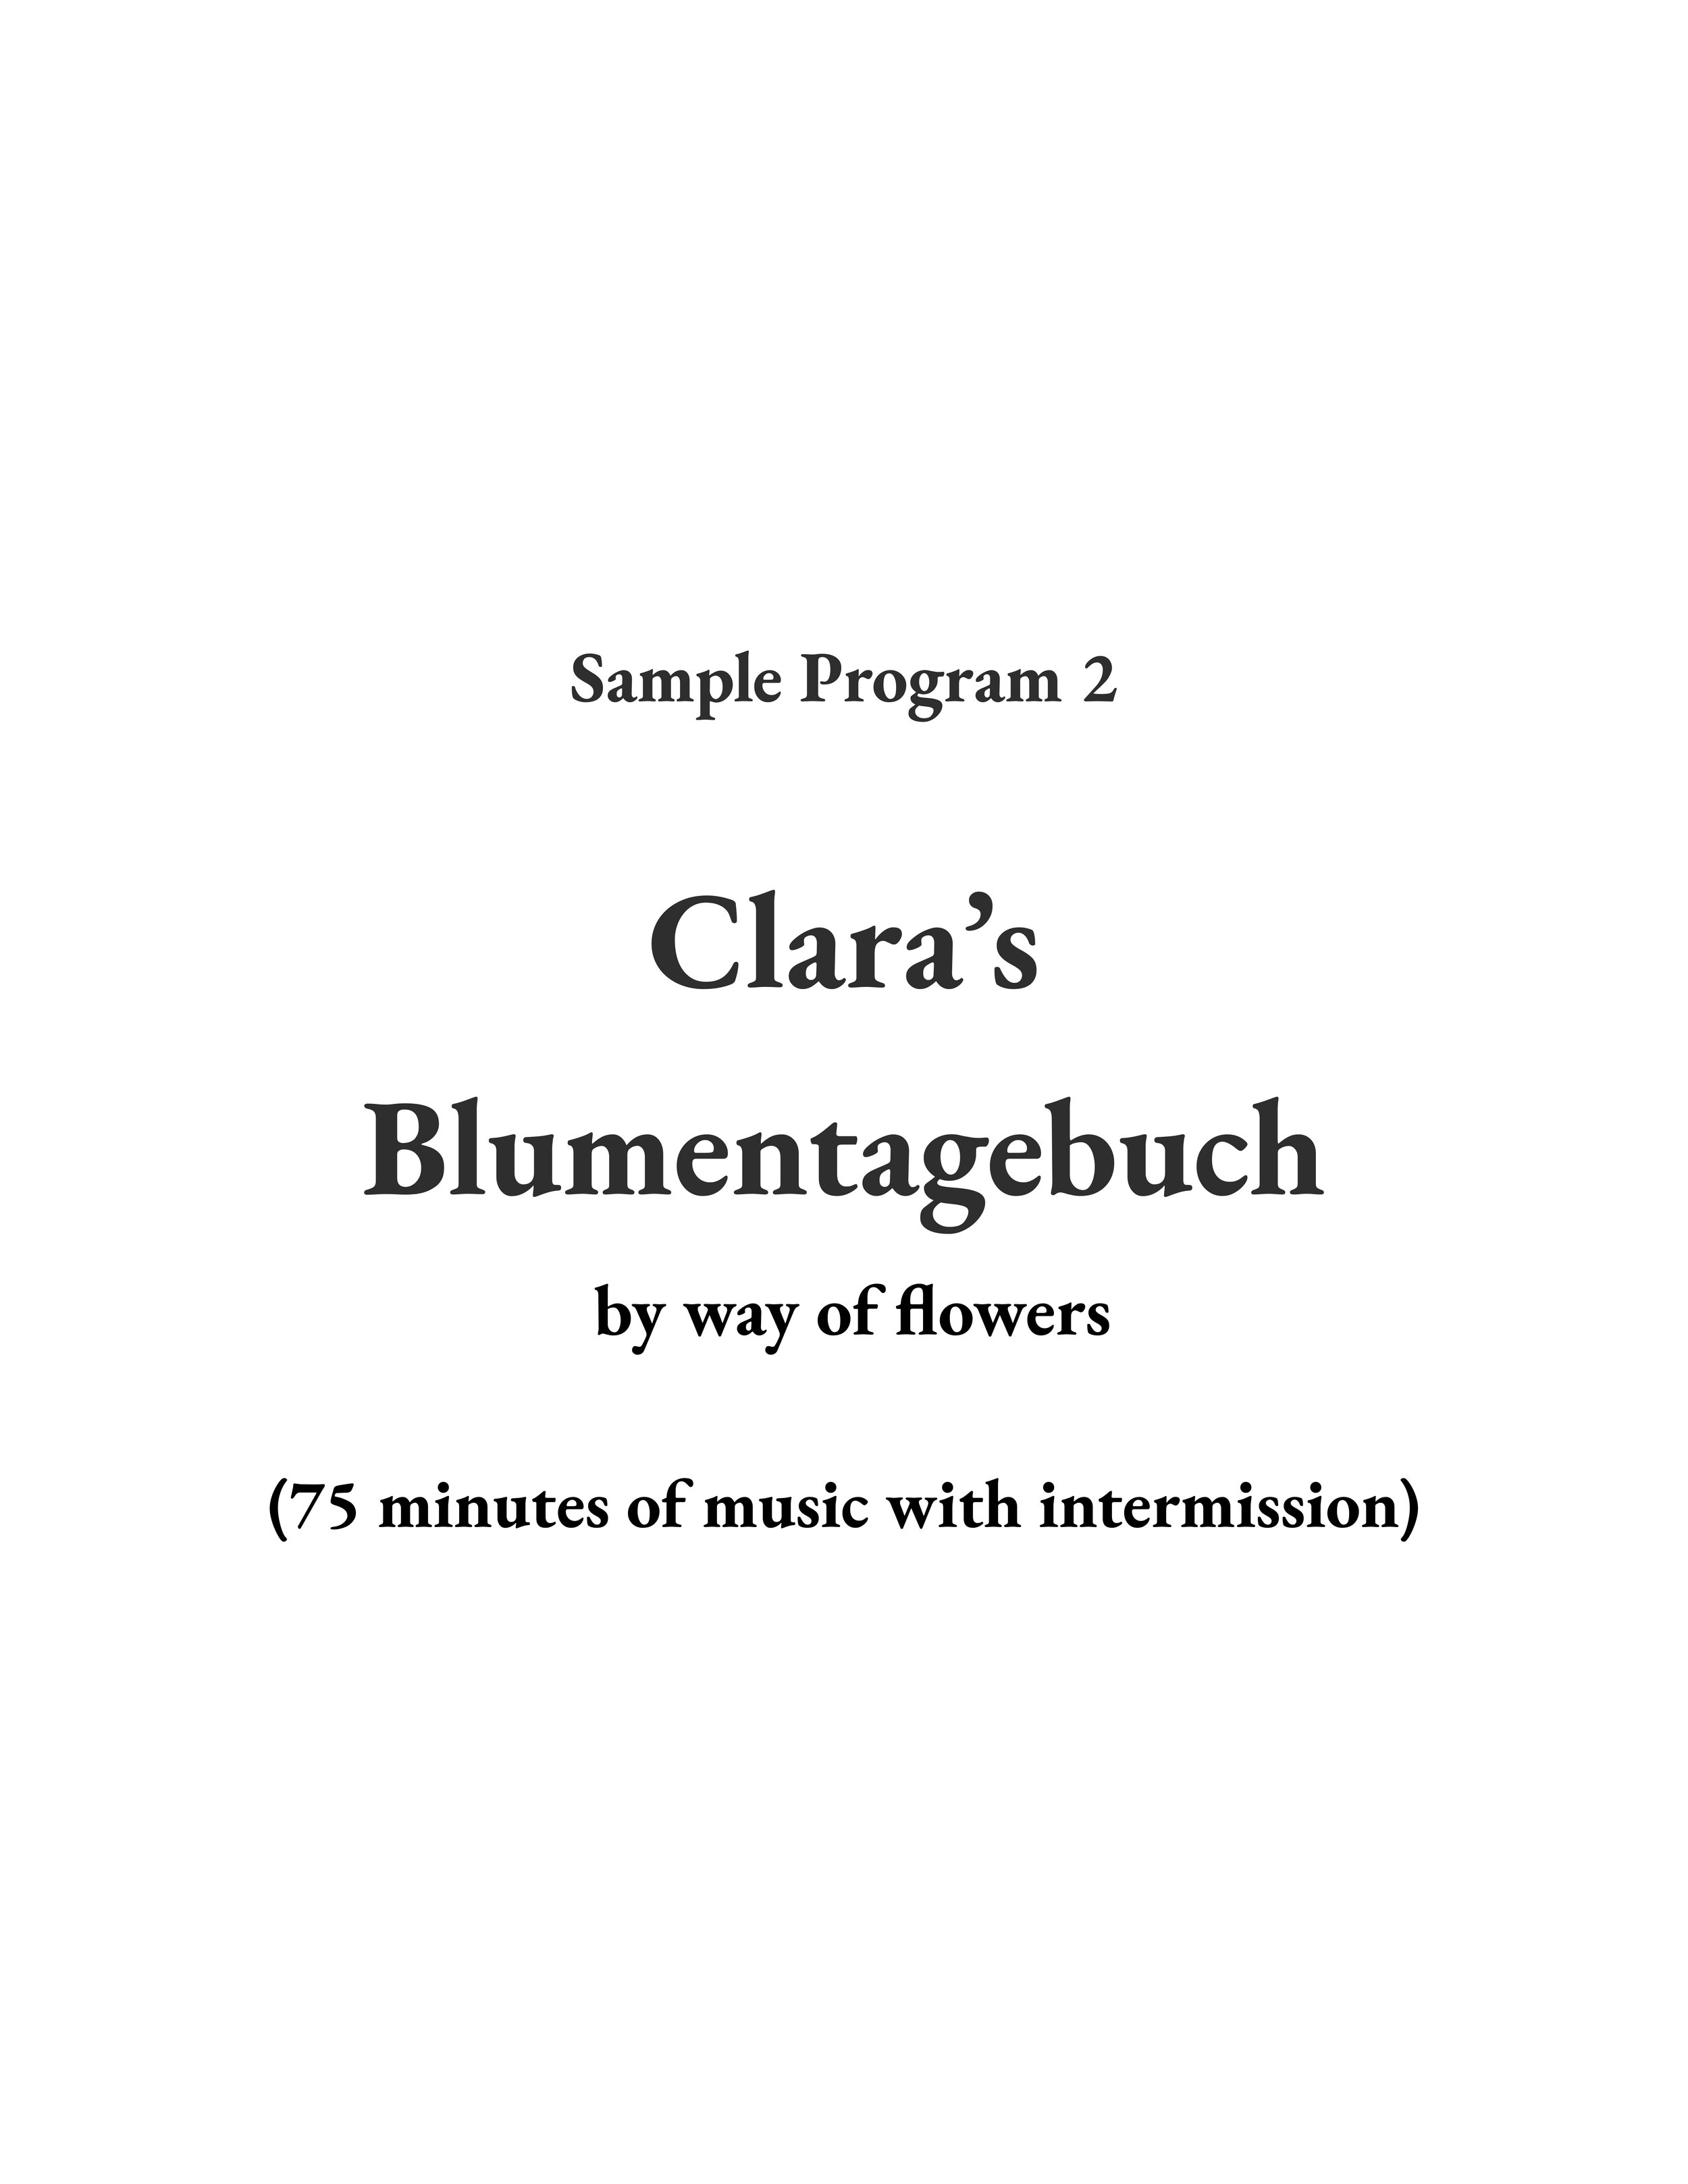 25-26 Blumentagebuch title page for website.jpg